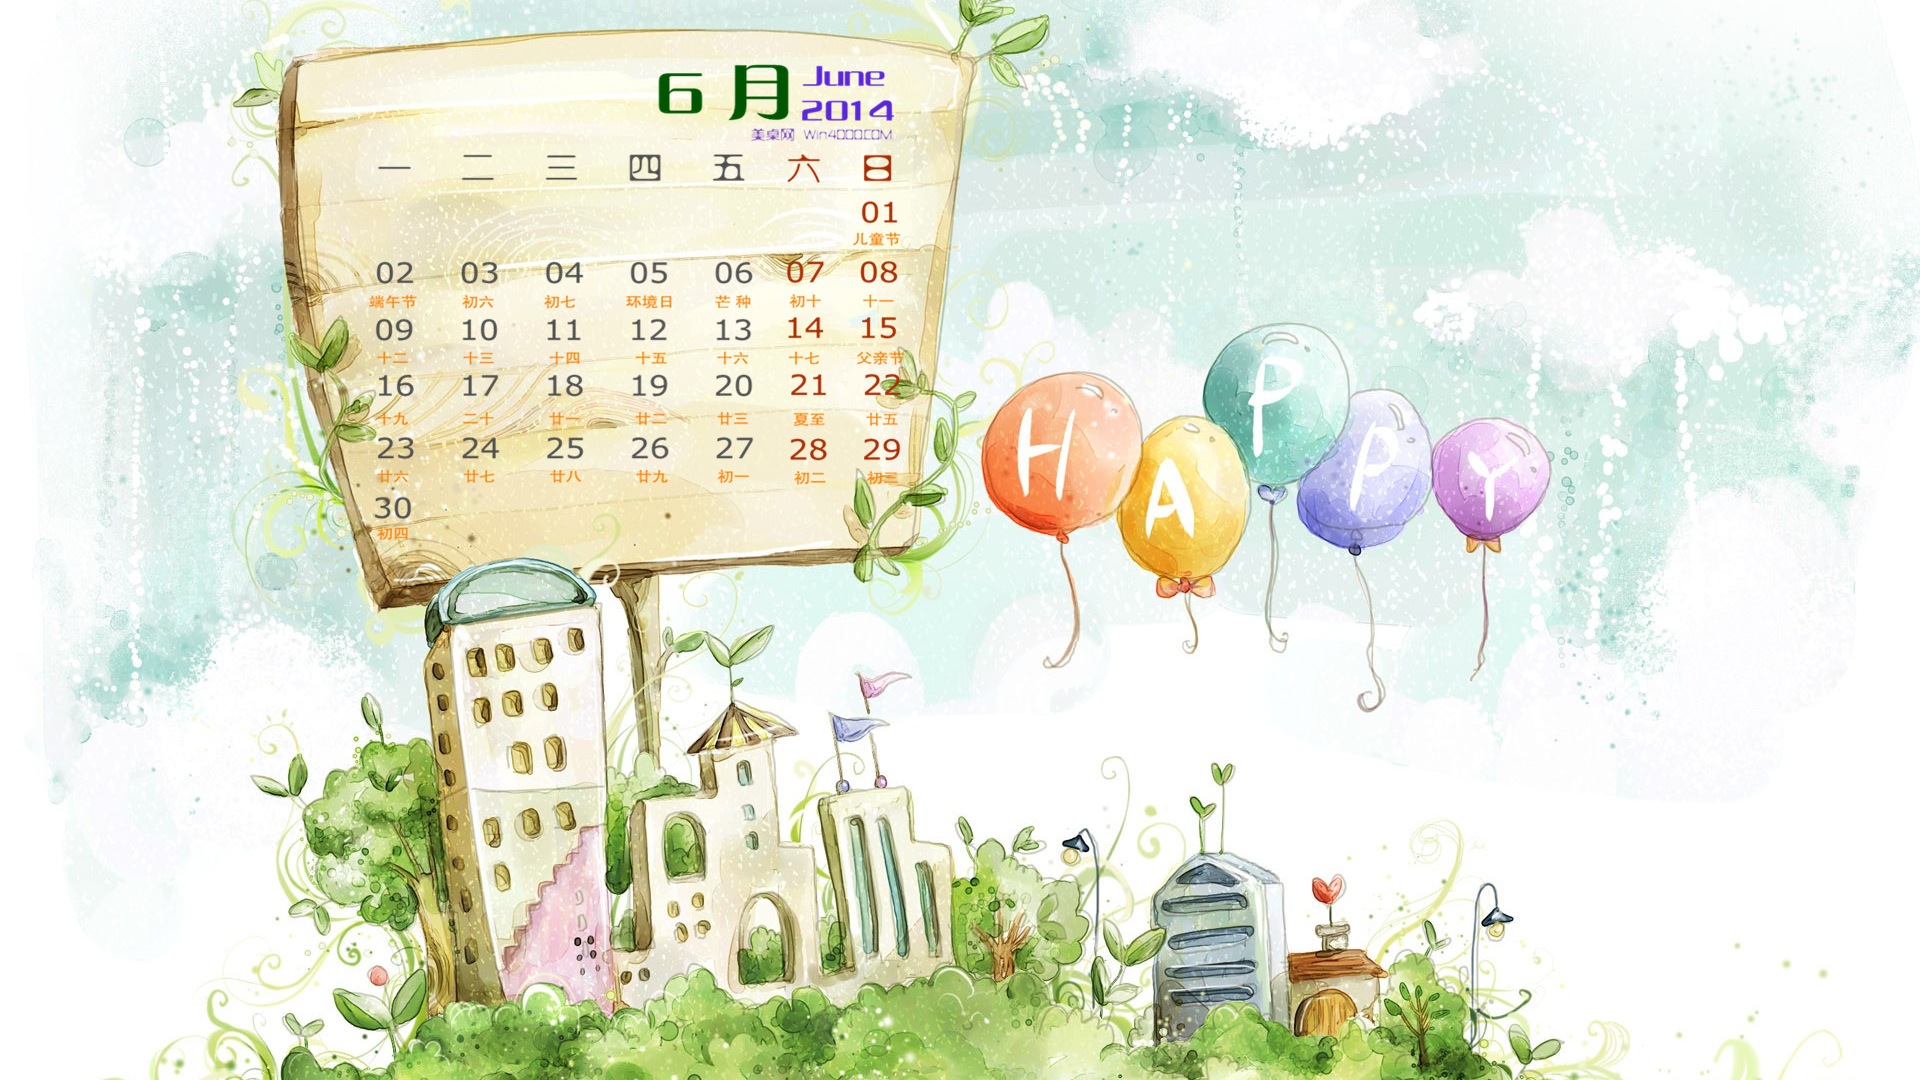 Июнь 2014 календарь обои (1) #11 - 1920x1080